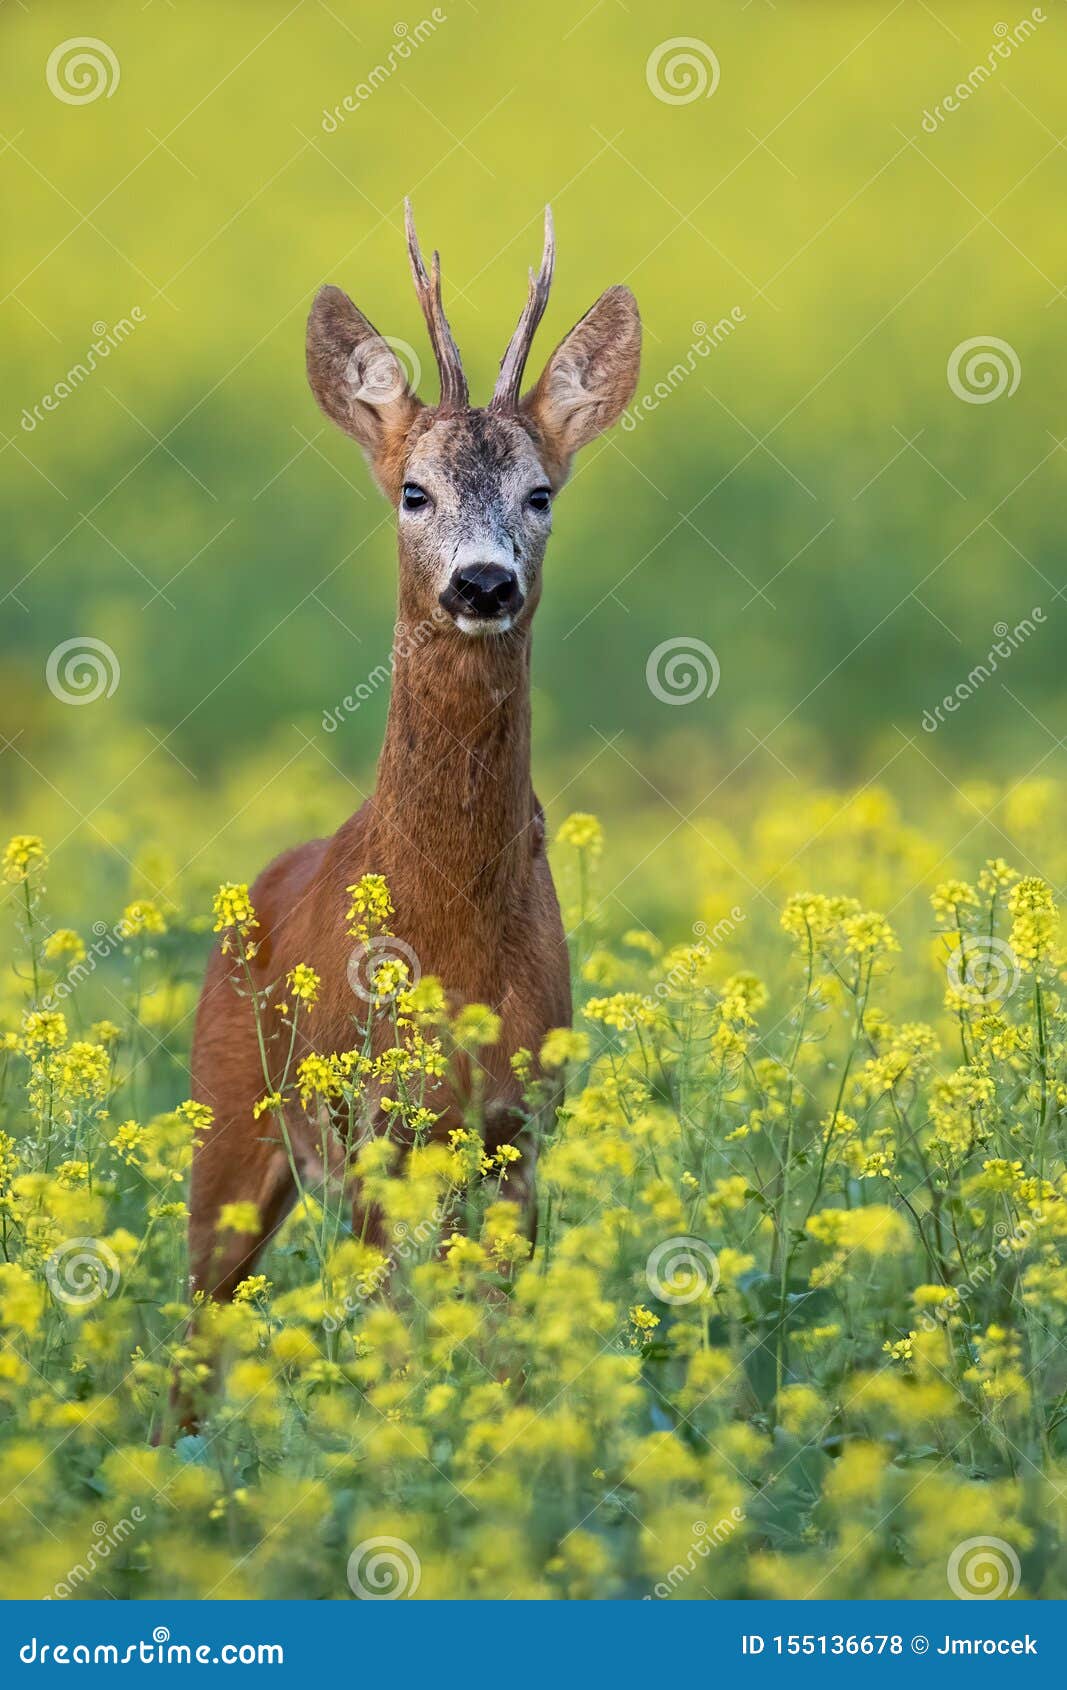 roe deer buck standing on a flowery rape field with yellow flowers in summer